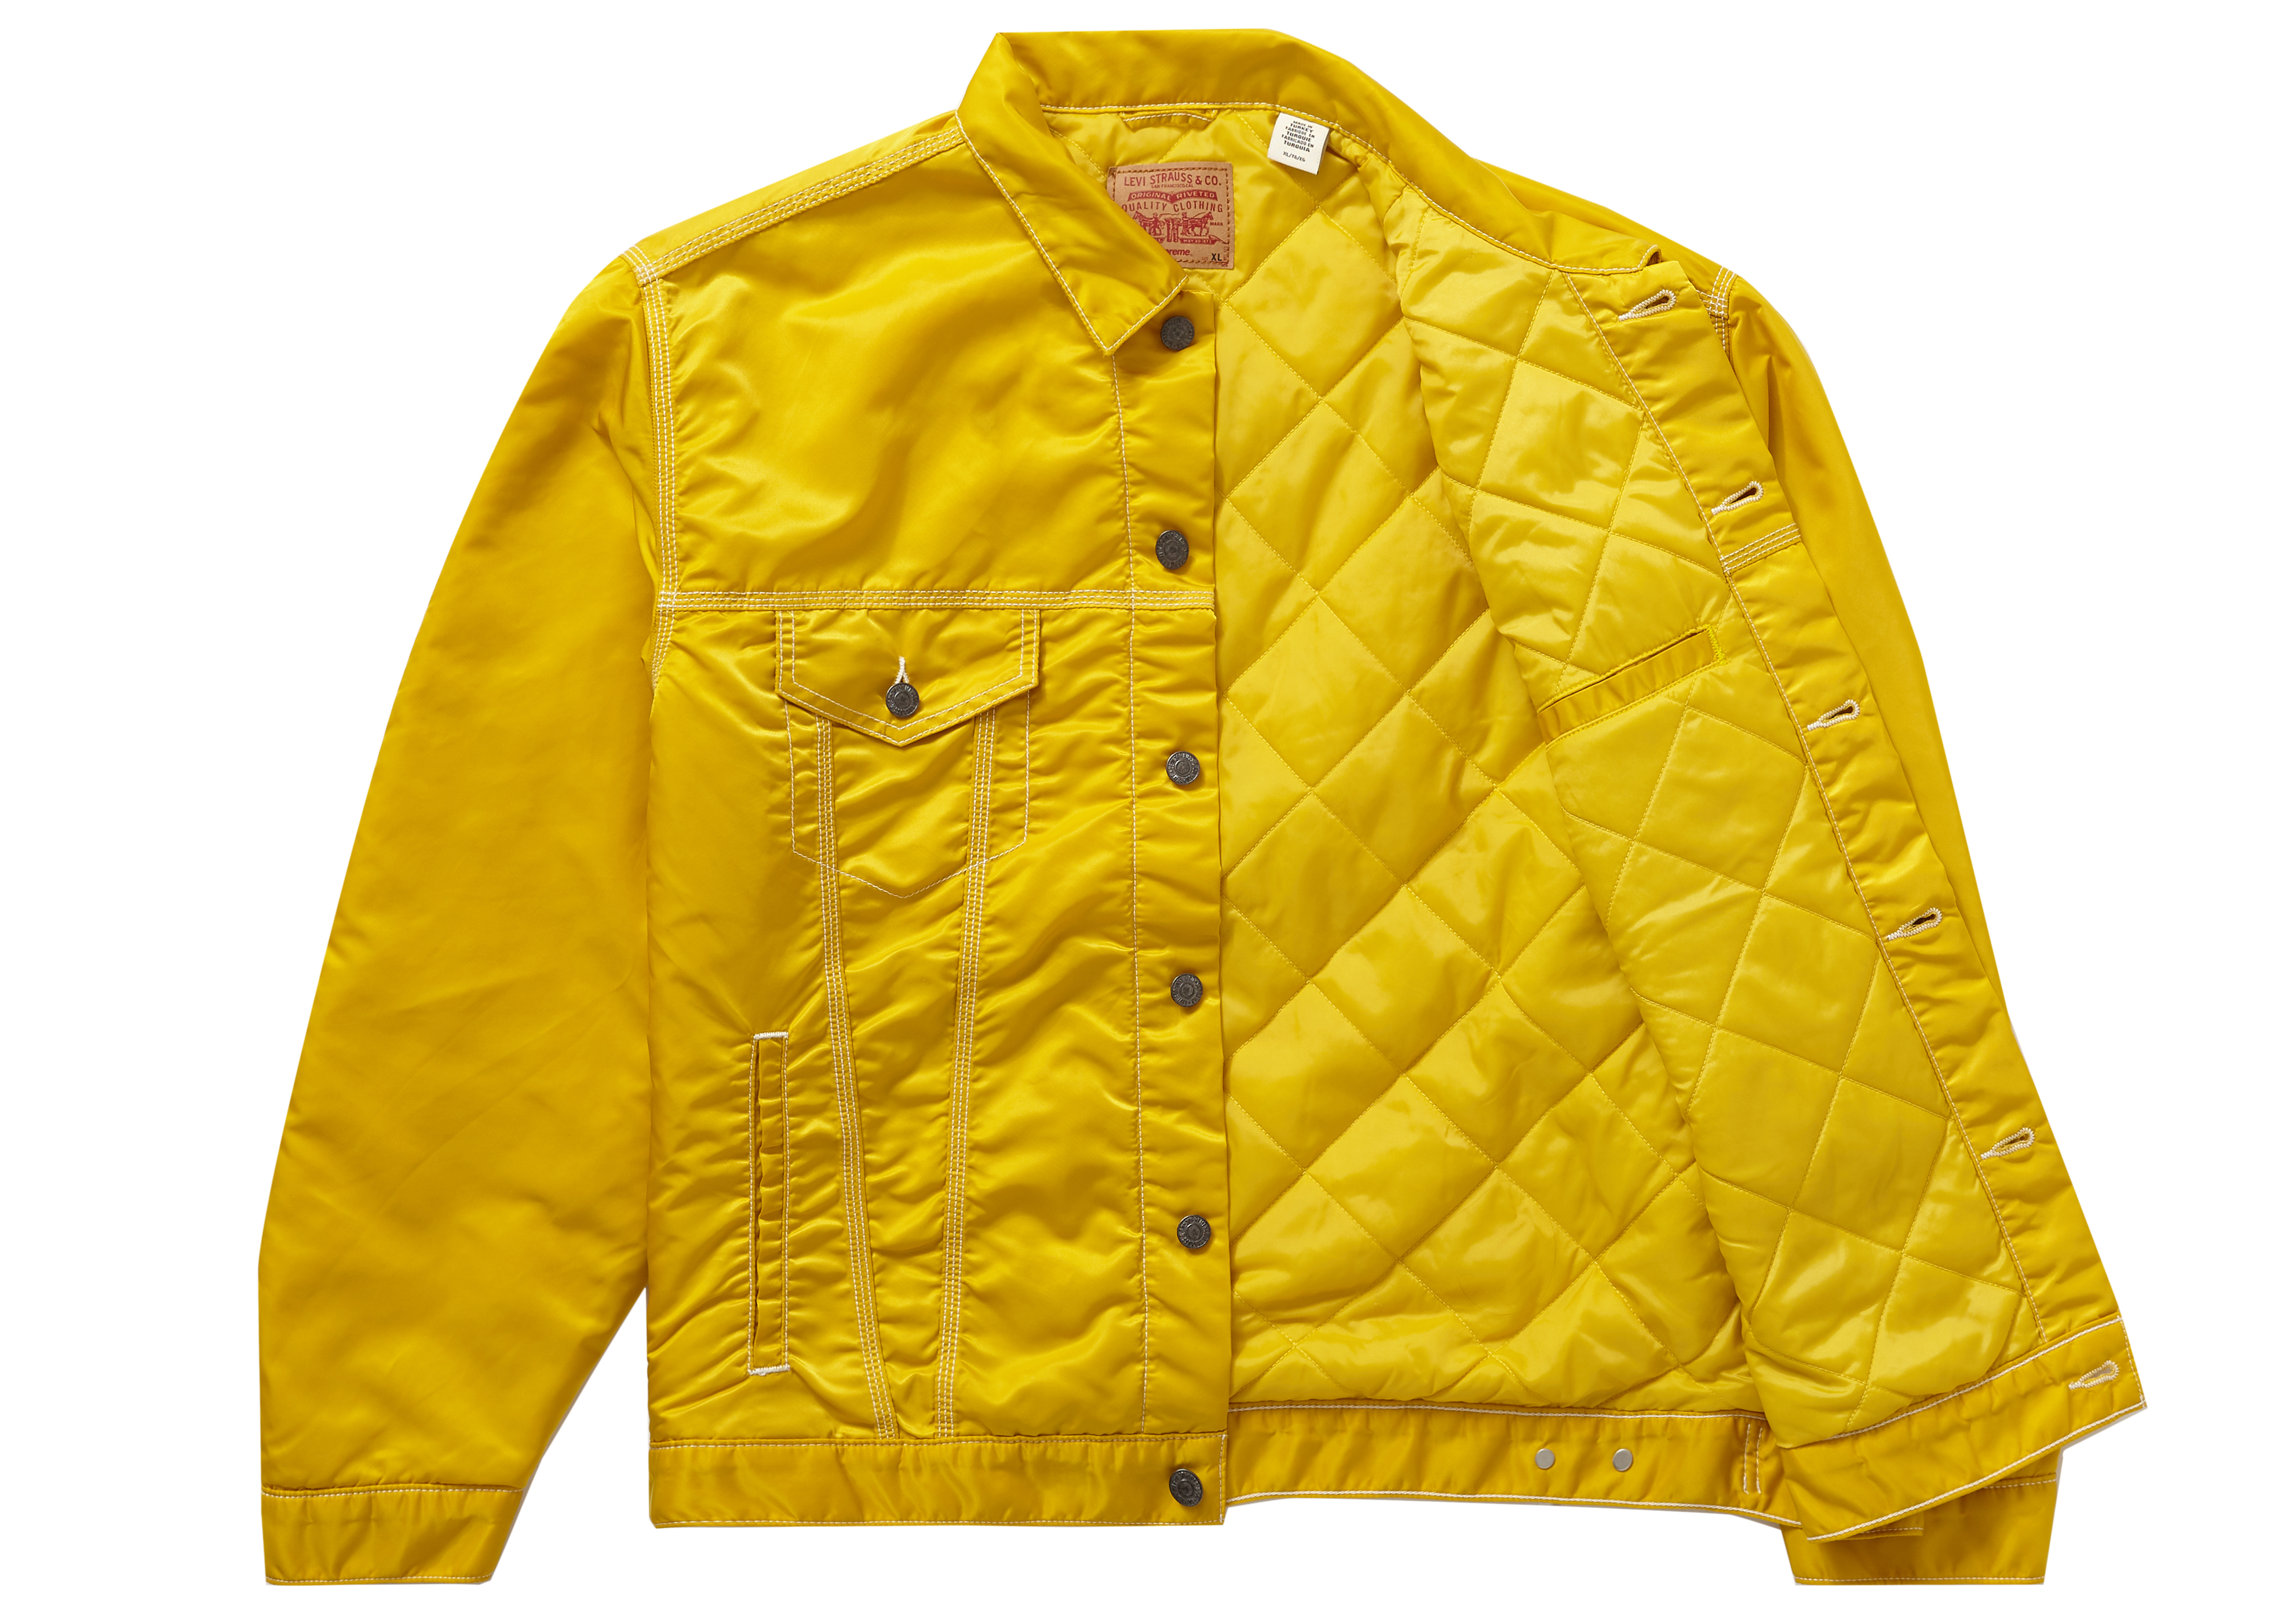 yellow levi jacket